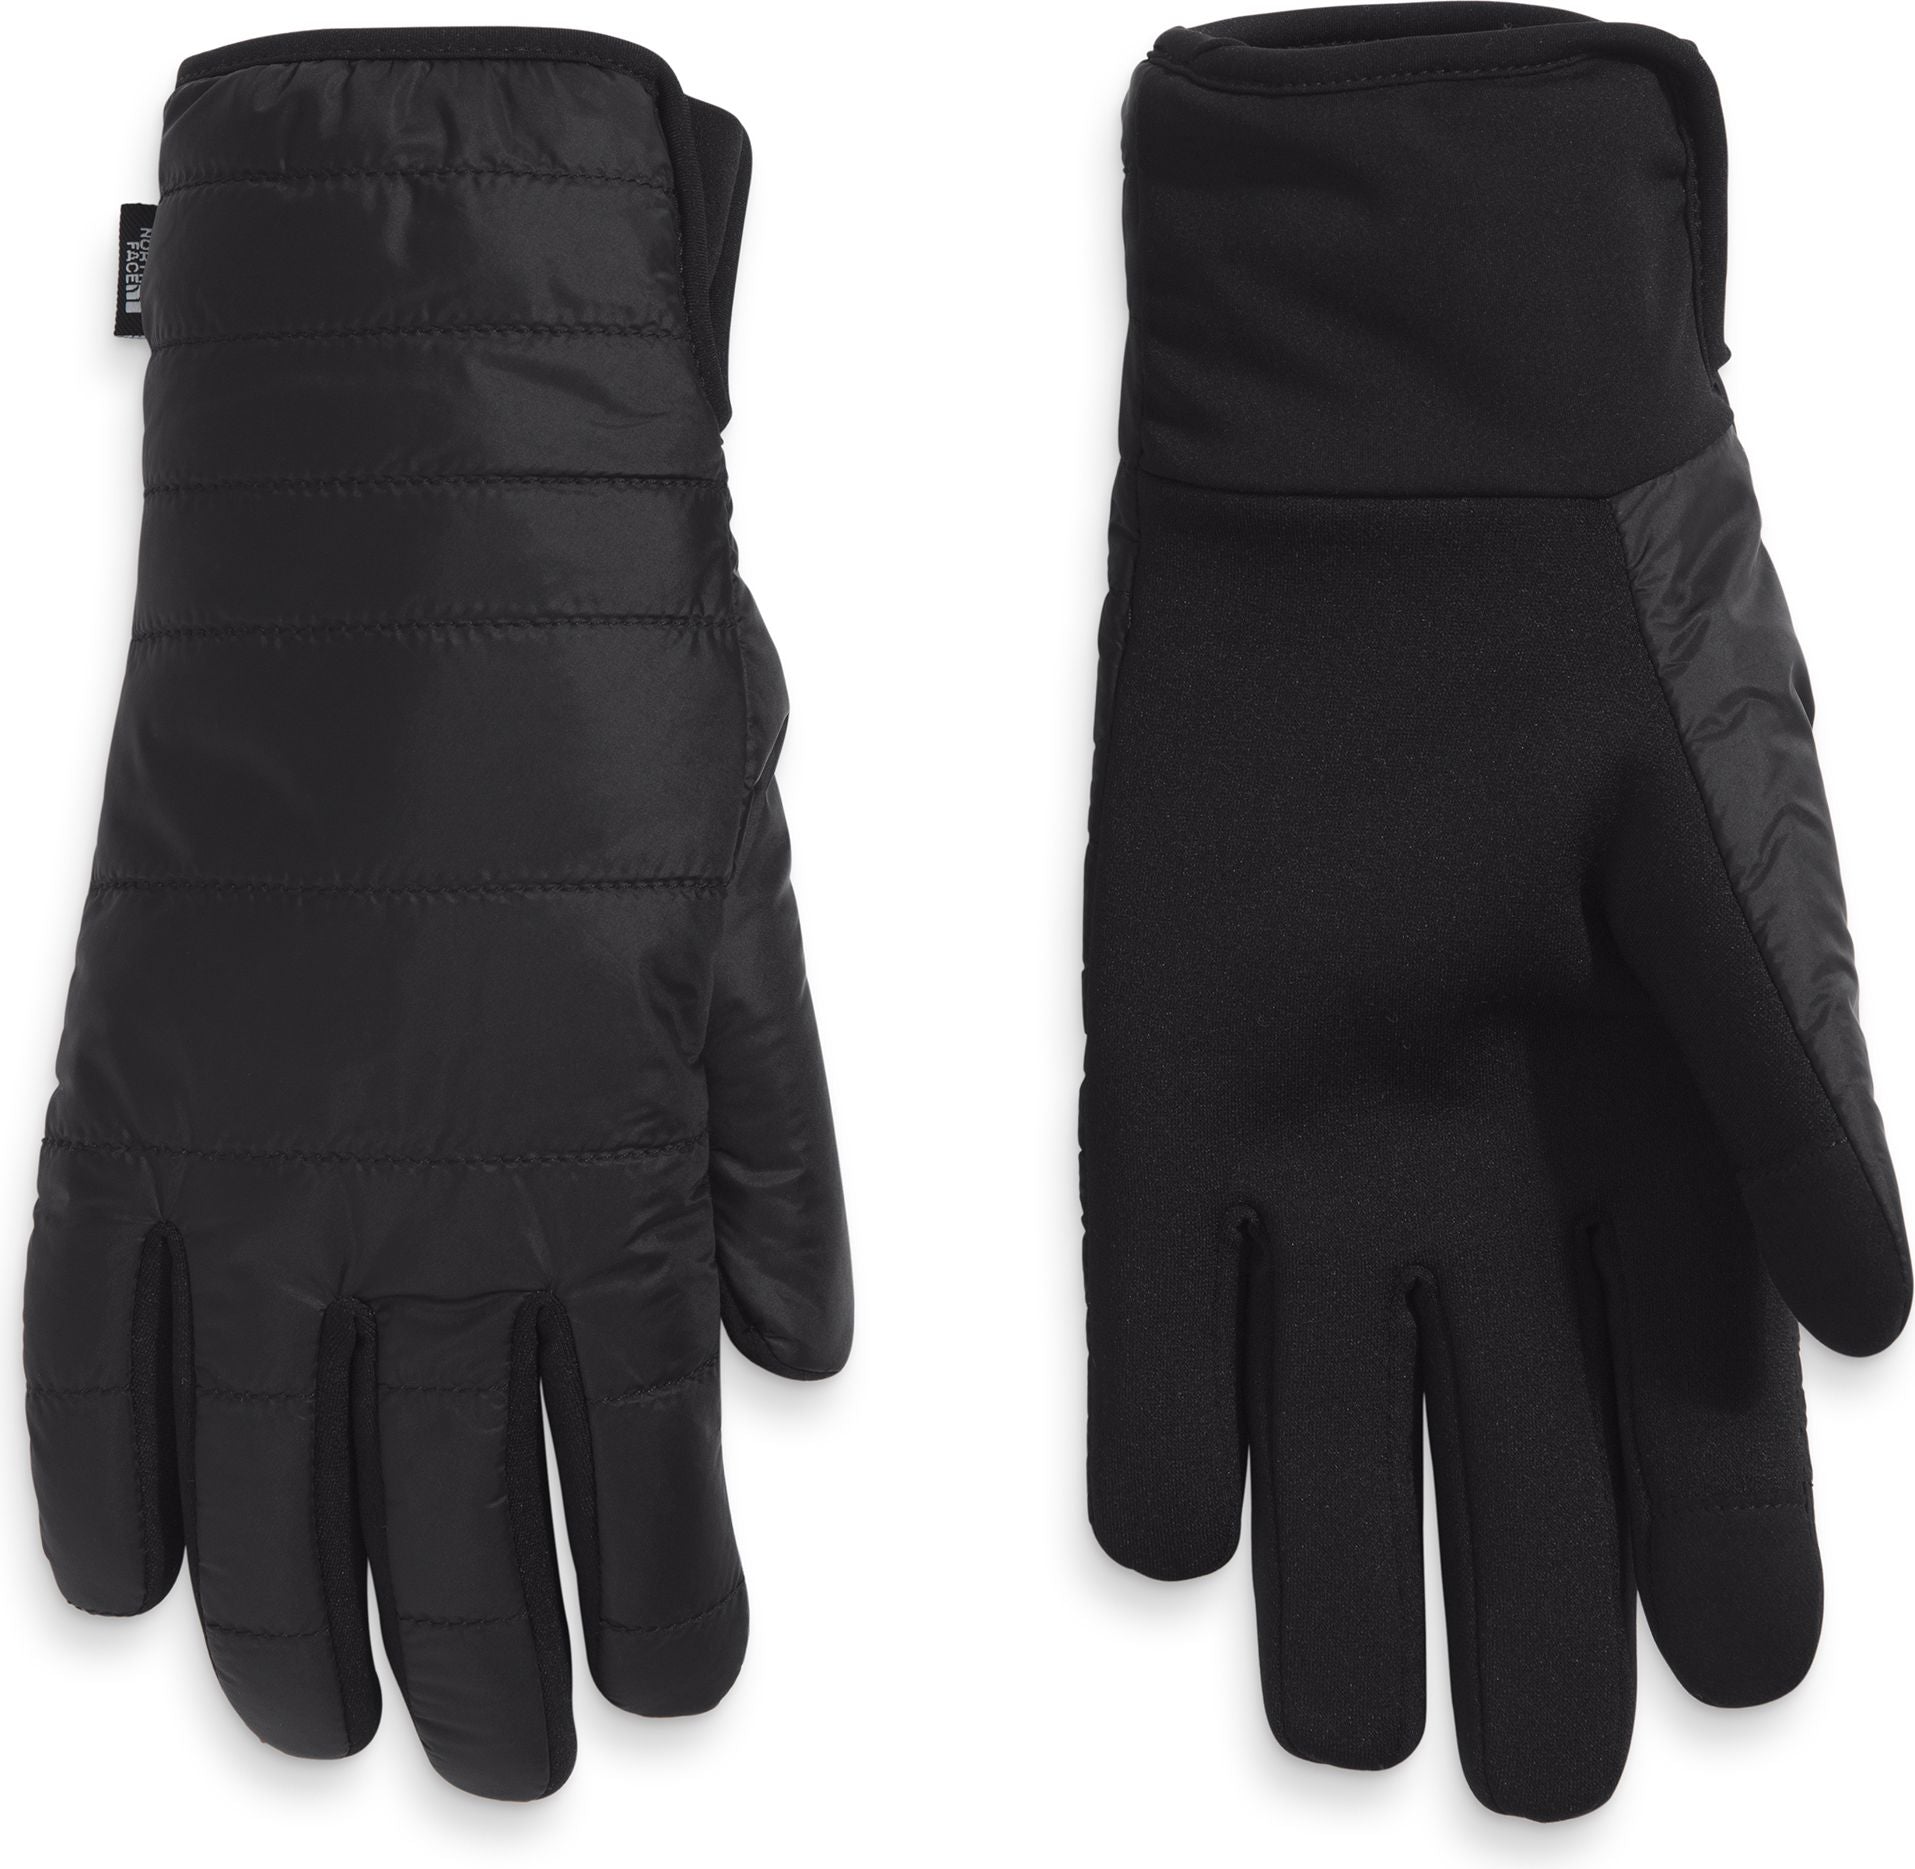 Women's Etip Quilted Heated Glove TNF Black